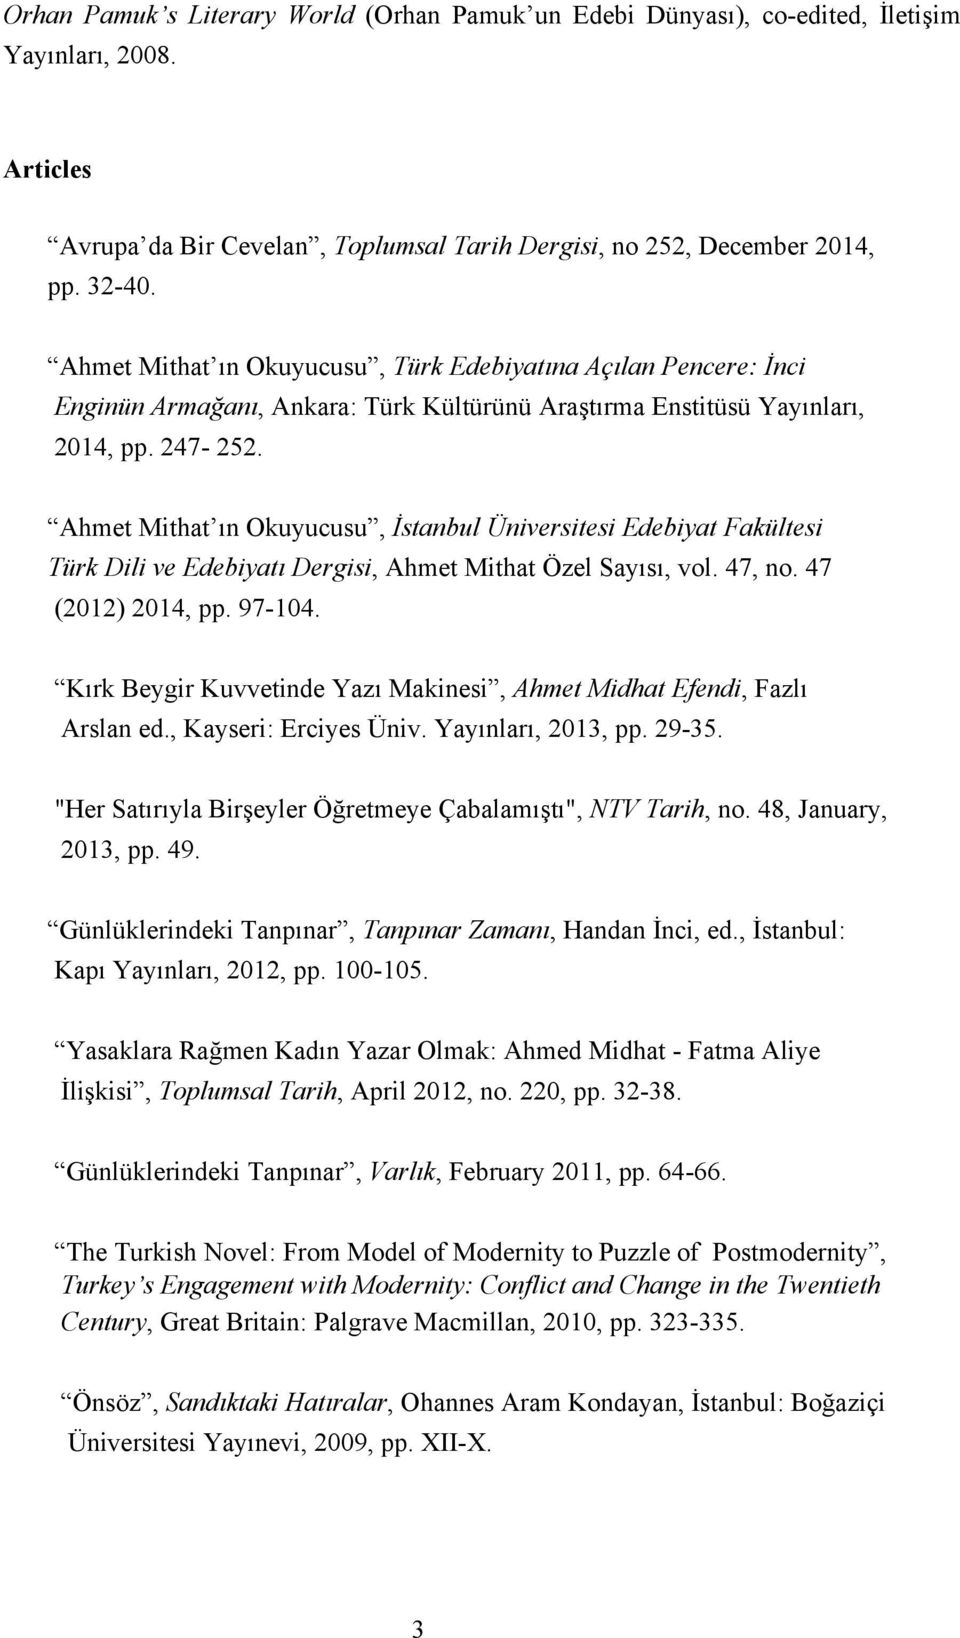 Ahmet Mithat ın Okuyucusu, İstanbul Üniversitesi Edebiyat Fakültesi Türk Dili ve Edebiyatı Dergisi, Ahmet Mithat Özel Sayısı, vol. 47, no. 47 (2012) 2014, pp. 97-104.